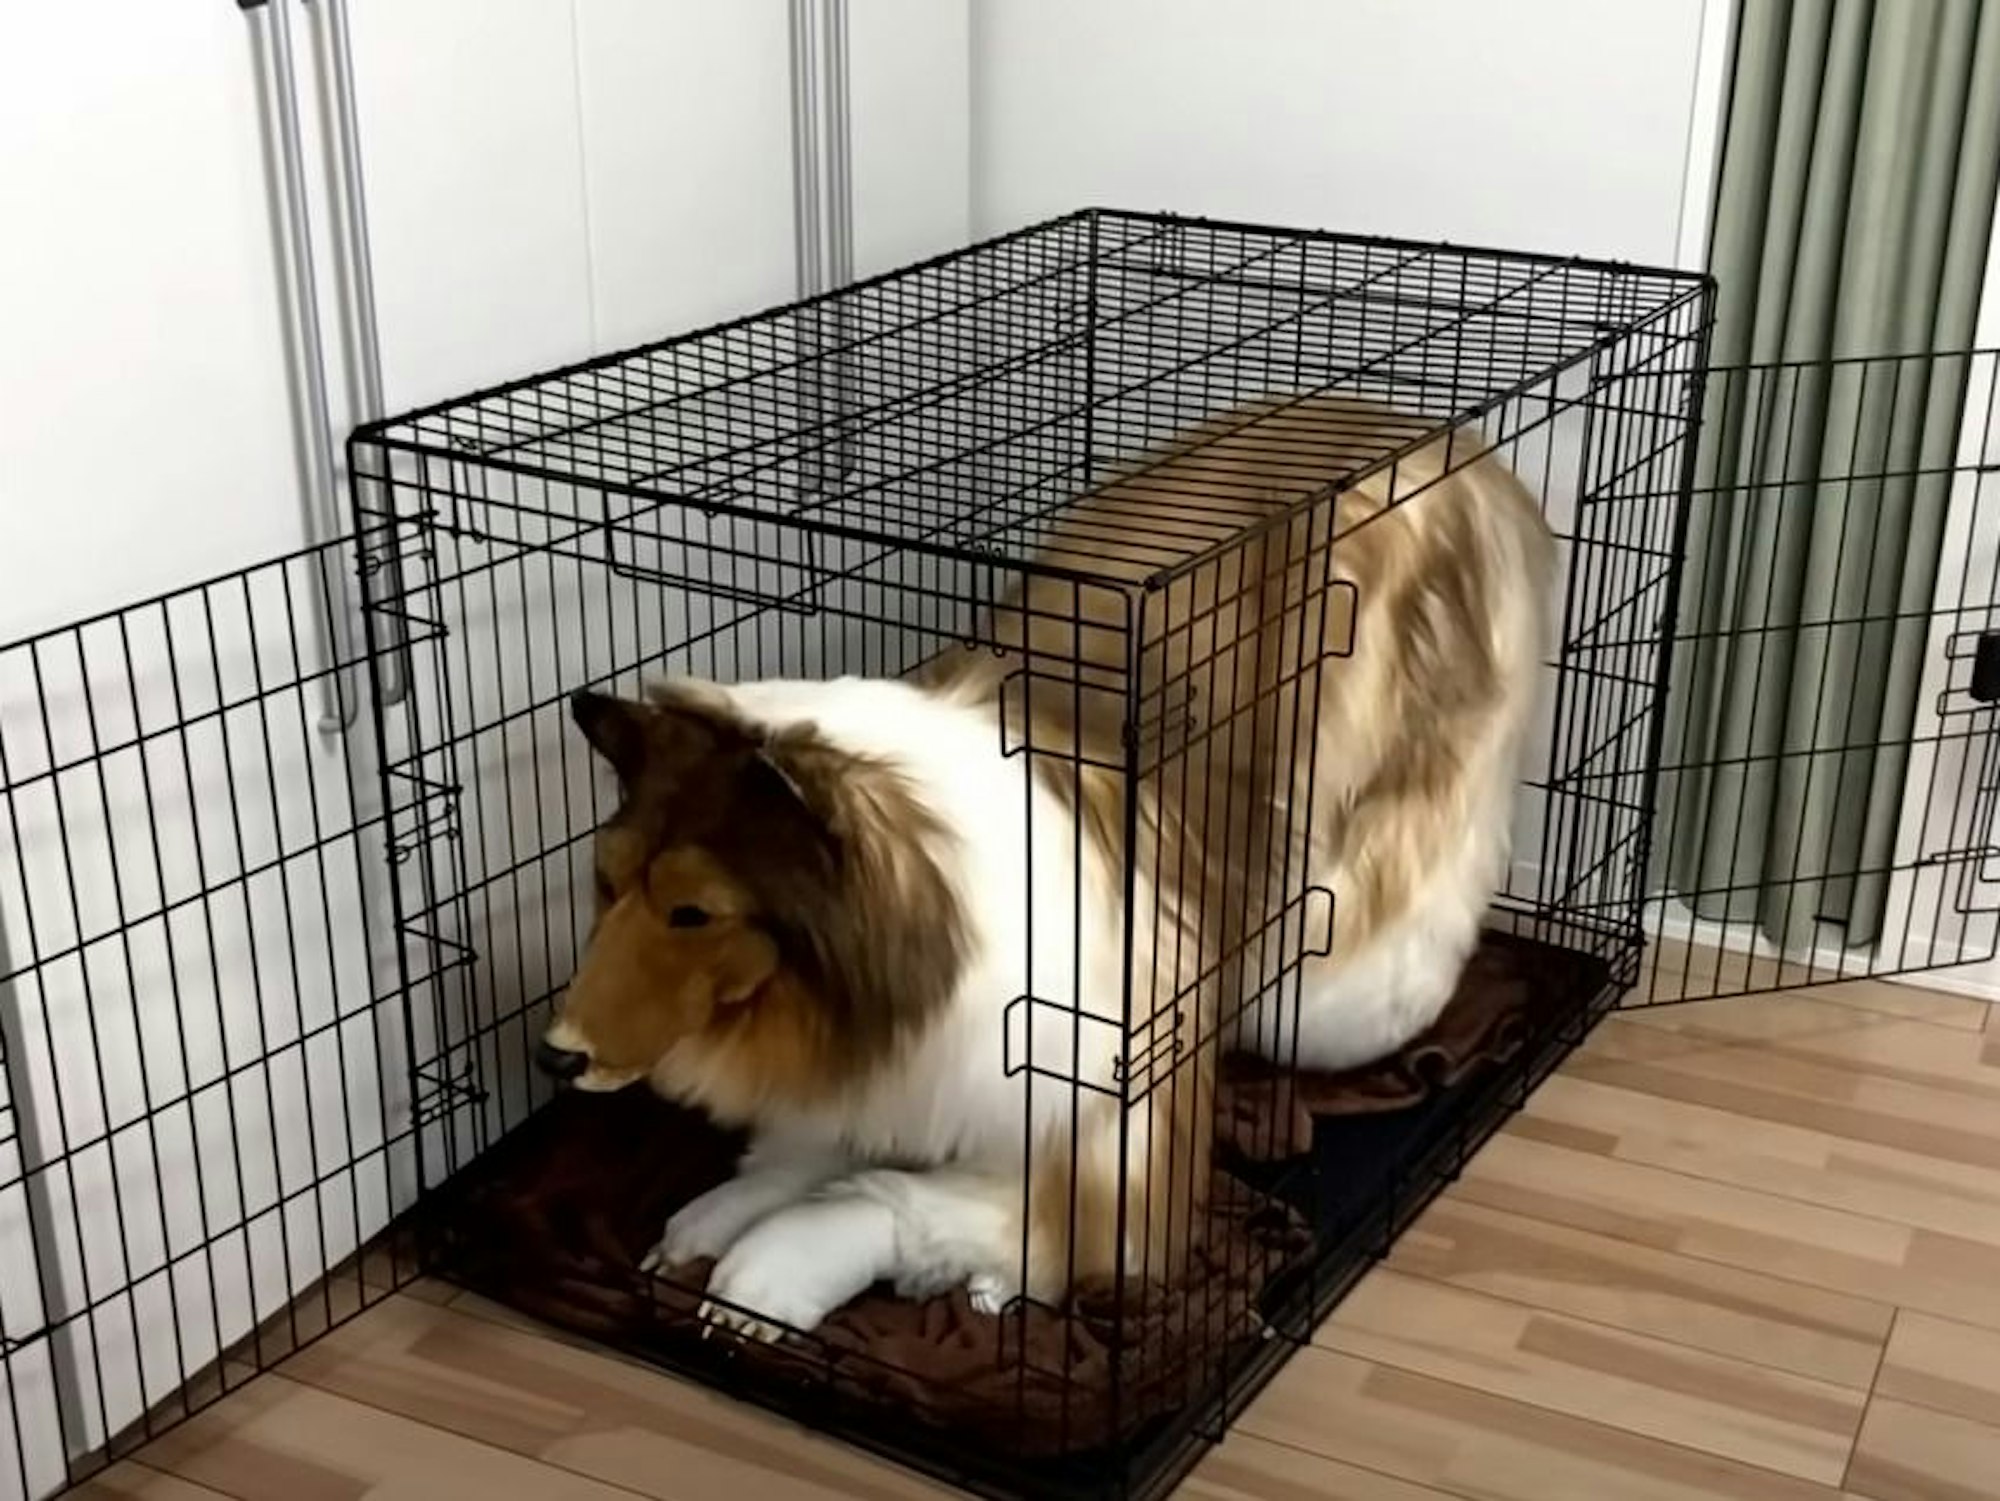 Der Japaner Toco sitzt in seinem Hundekostüm in einem Hundekäfig.